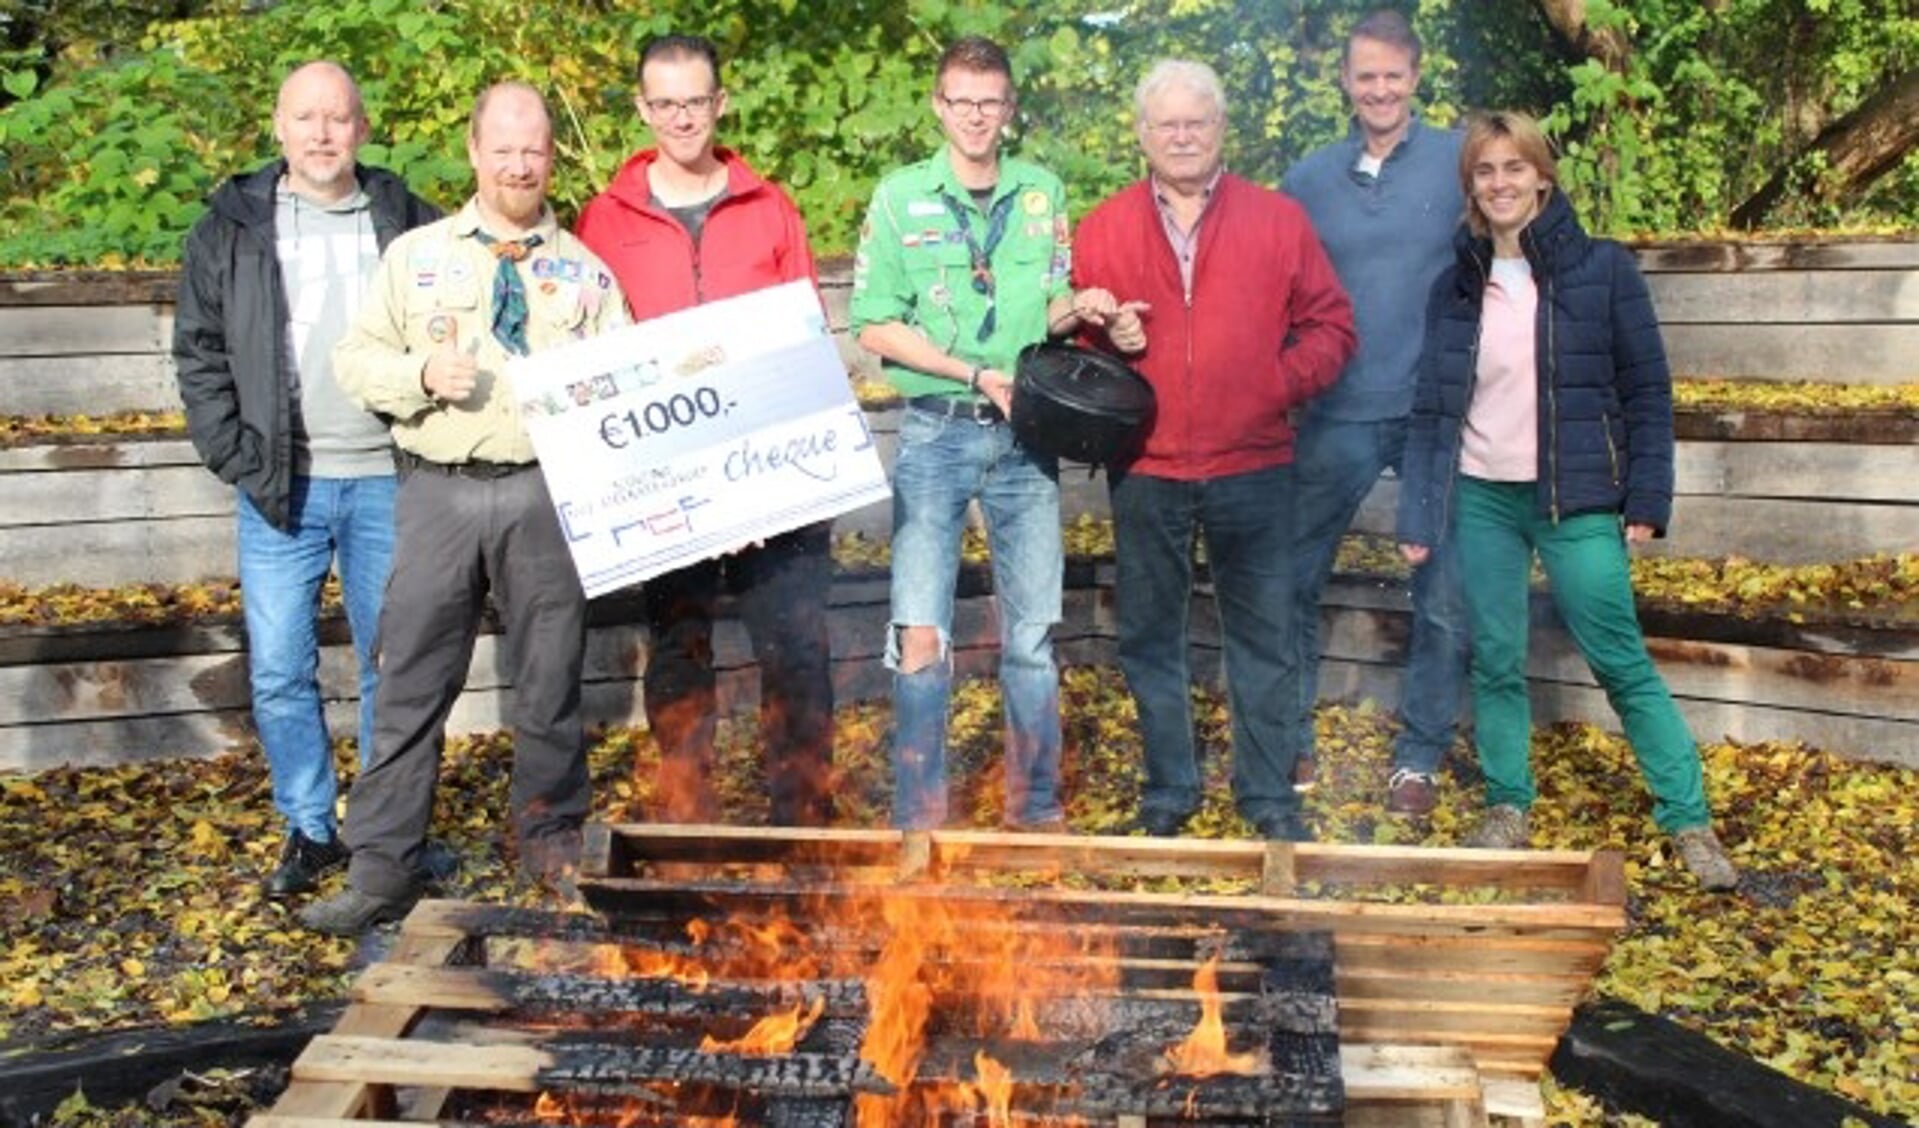 Buiten koken op open vuur krijgt een flinke boost met de cheque van het Roest Crollius Fonds.  (Foto: Lysette Verwegen)